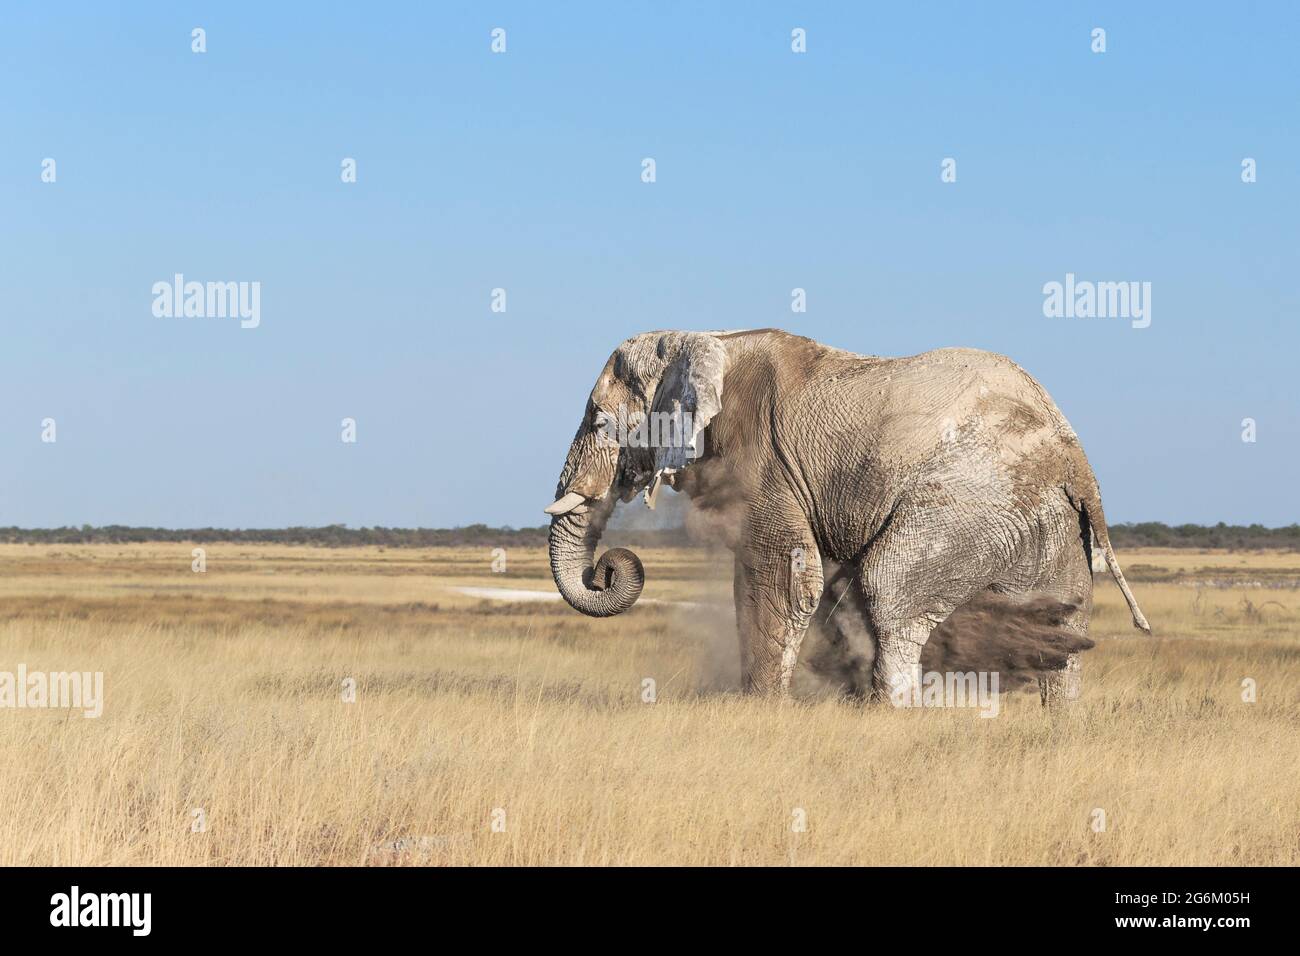 Der afrikanische Elefantenbulle Loxodonta Africana stäubt seinen Körper. Etosha Nationalpark, Namibia, Afrika Stockfoto